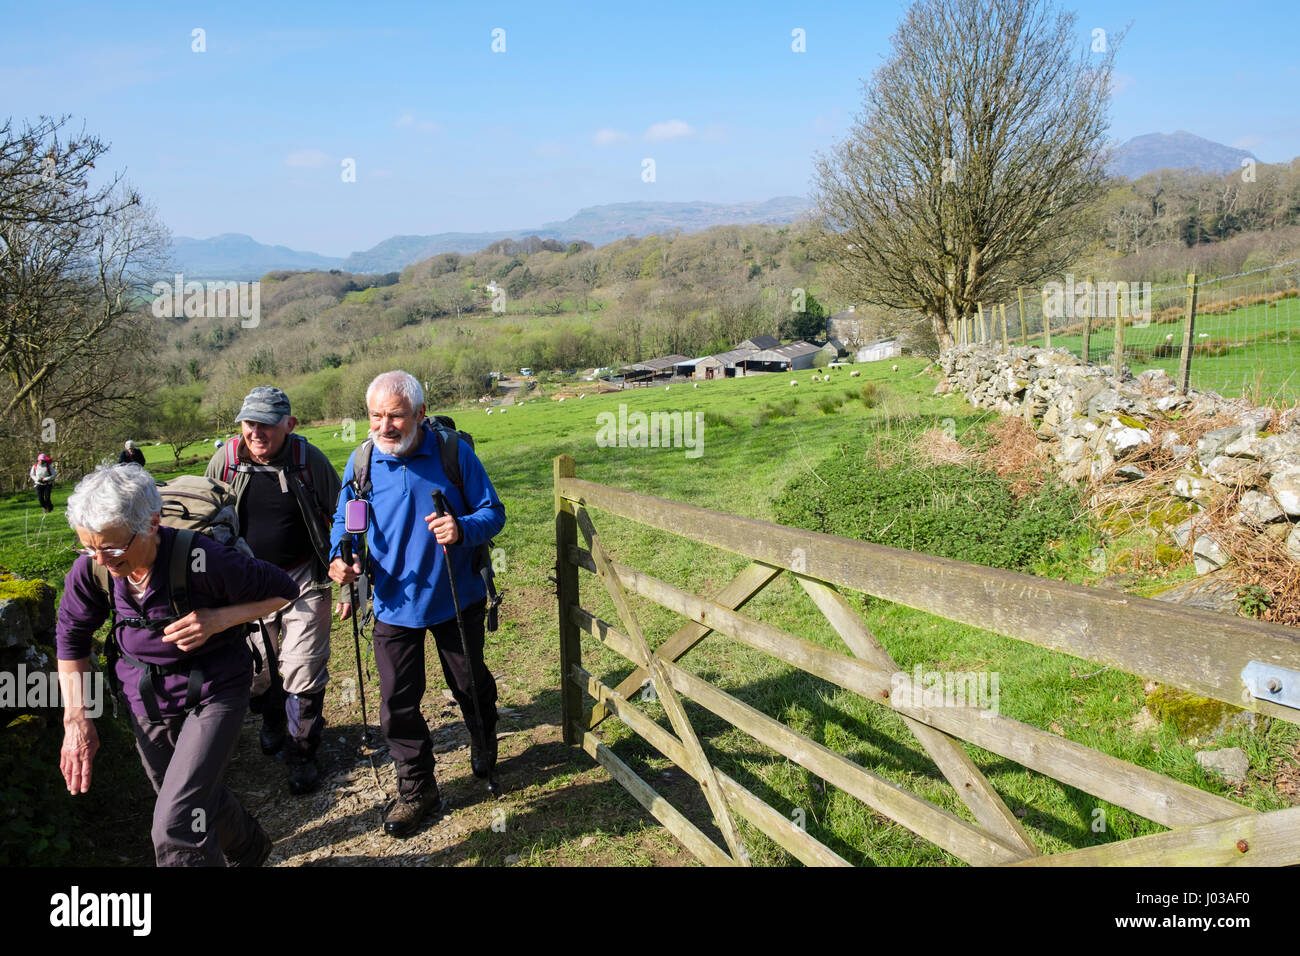 Groupe de randonneurs lors d'une promenade en campagne marche à travers une barrière ouverte champ De sur ferme de moutons dans la région de Snowdonia, campagne. Le Nord du Pays de Galles Royaume-uni Grande-Bretagne Banque D'Images